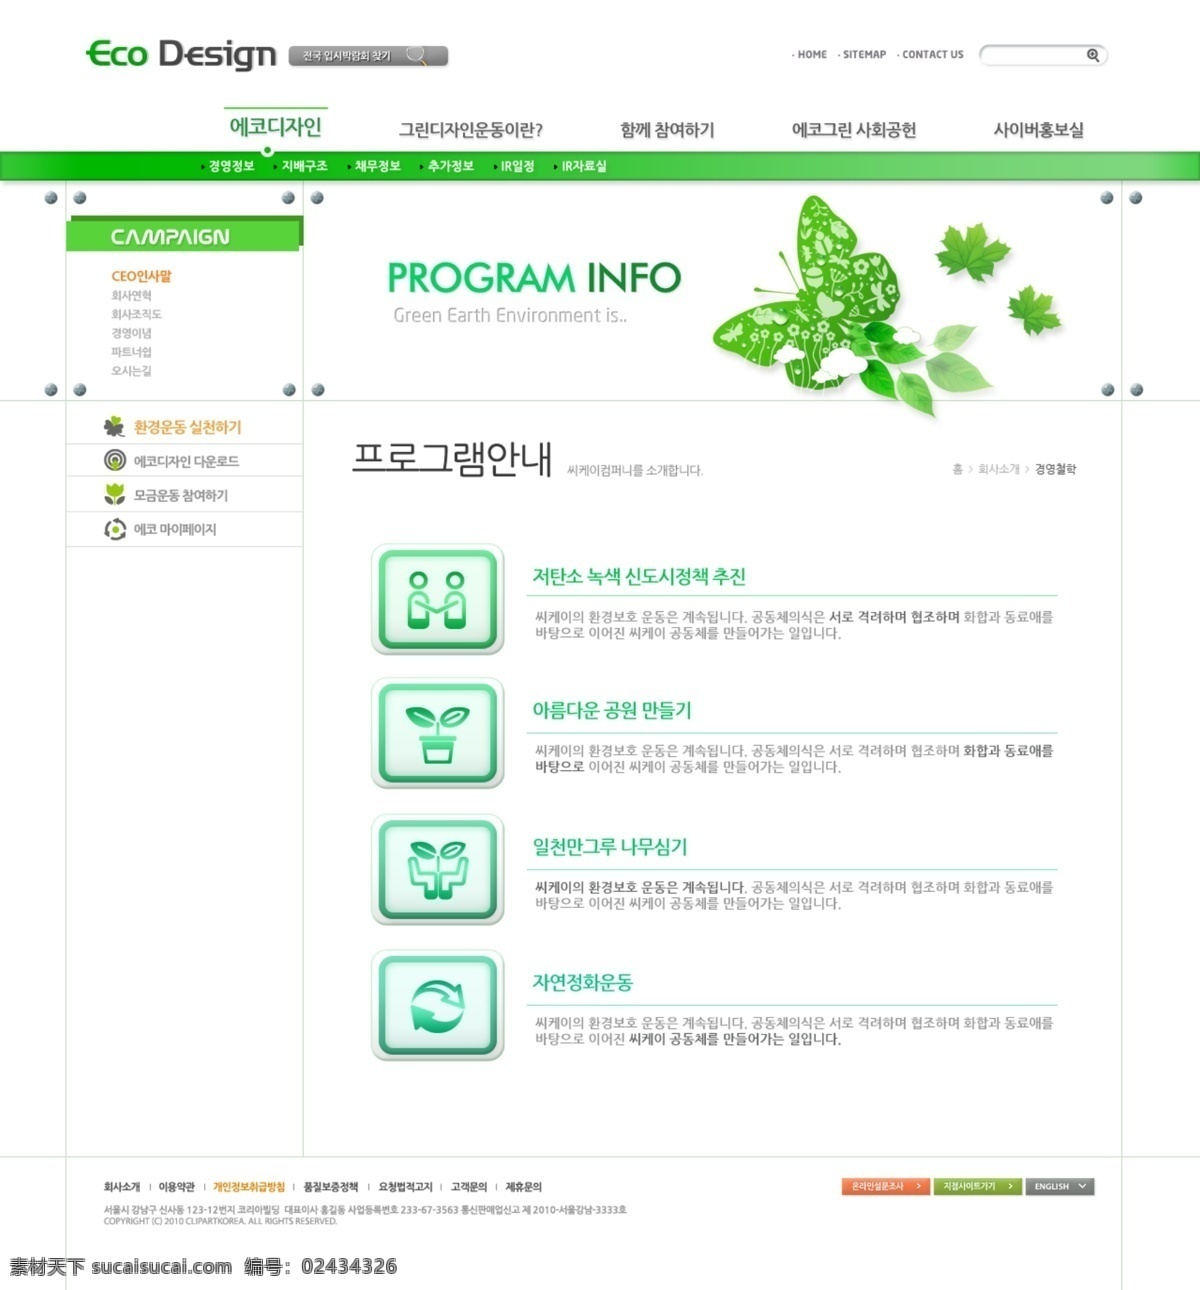 韩国 清爽 绿色环保 节能 公益 类 网页 韩国网页 公益网页 环保网页 清爽绿色 企业站 web 界面设计 韩文模板 白色